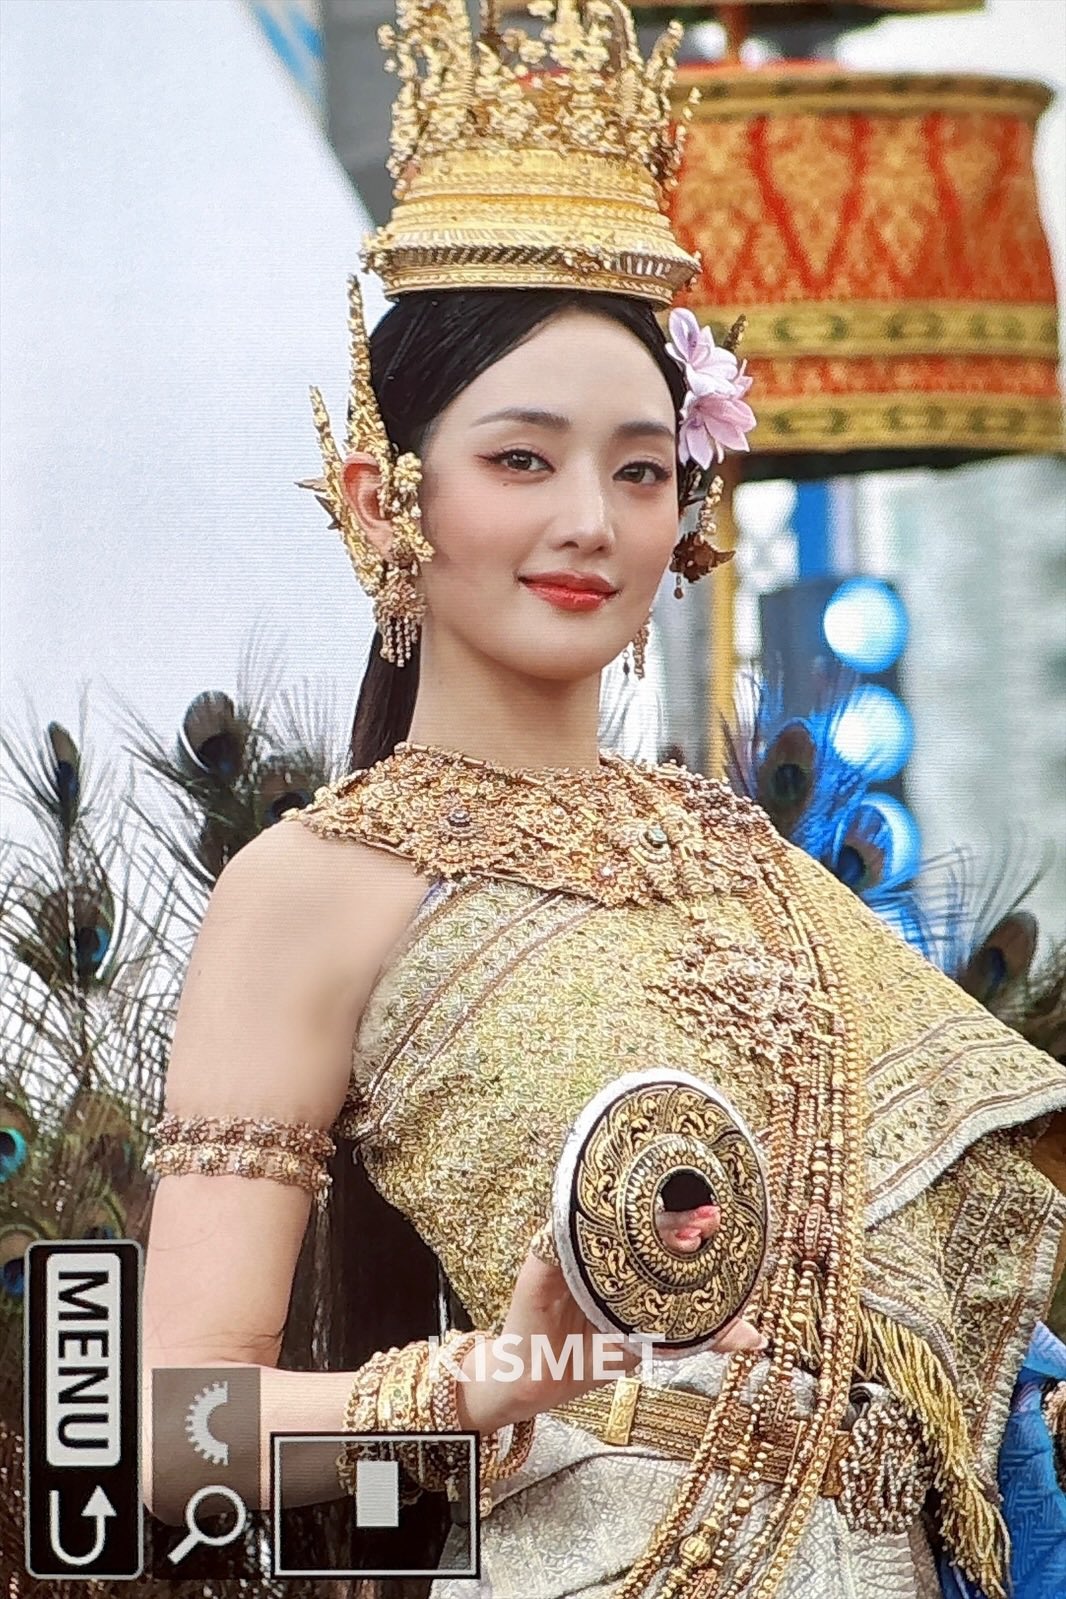 전통의상 입고 태국 송크란 축제 참석한 (여자)아이들 민니